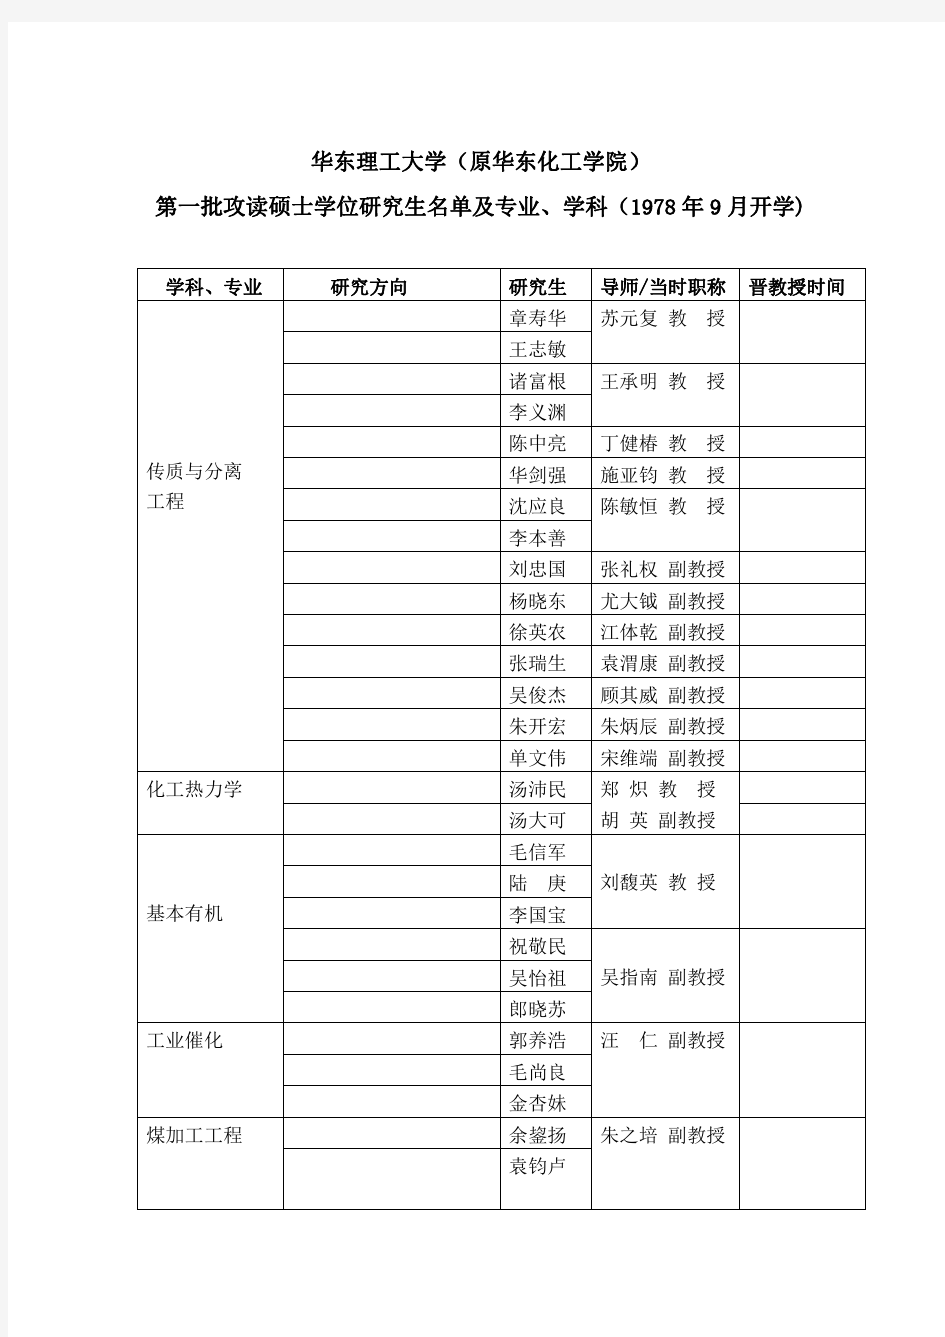 华东理工大学首批硕士研究生名单